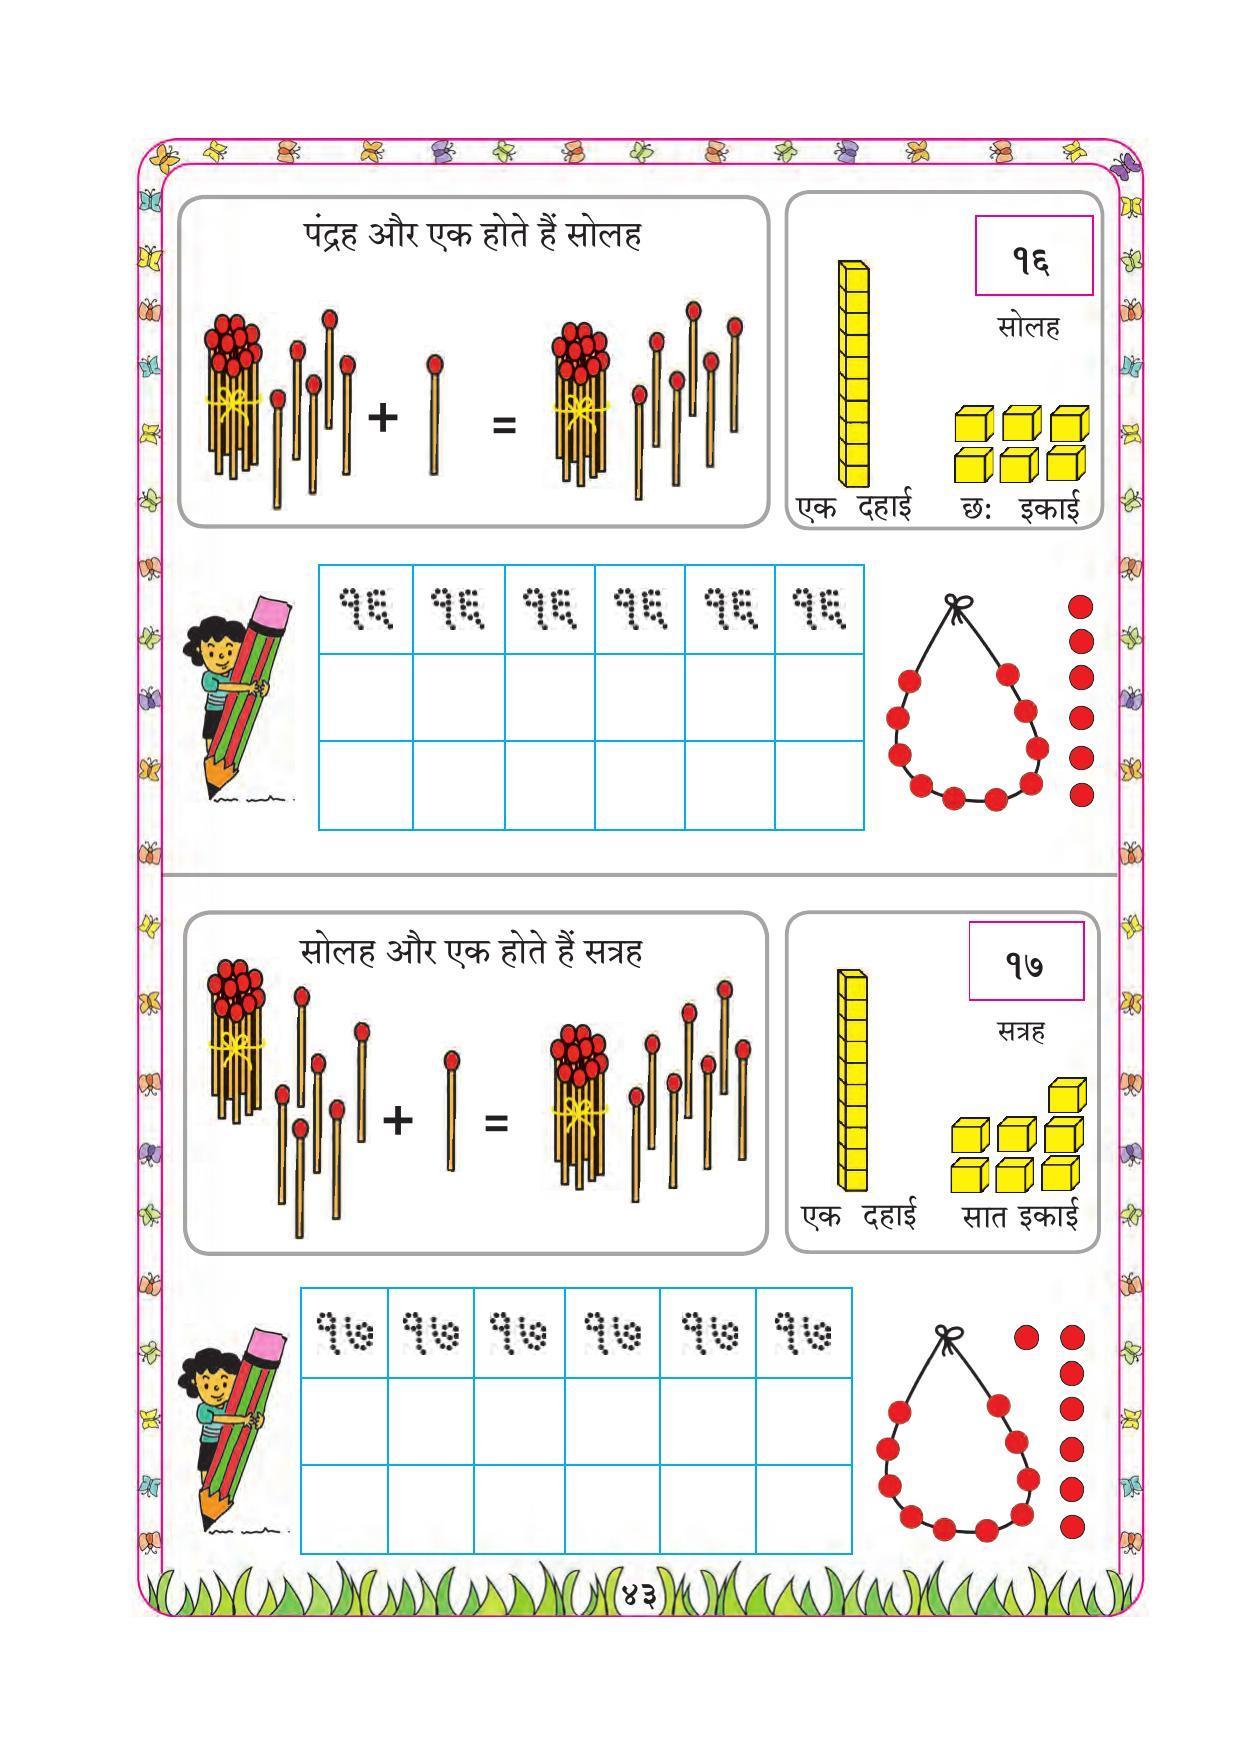 Maharashtra Board Class 1 Maths (Hindi Medium) Textbook - Page 53